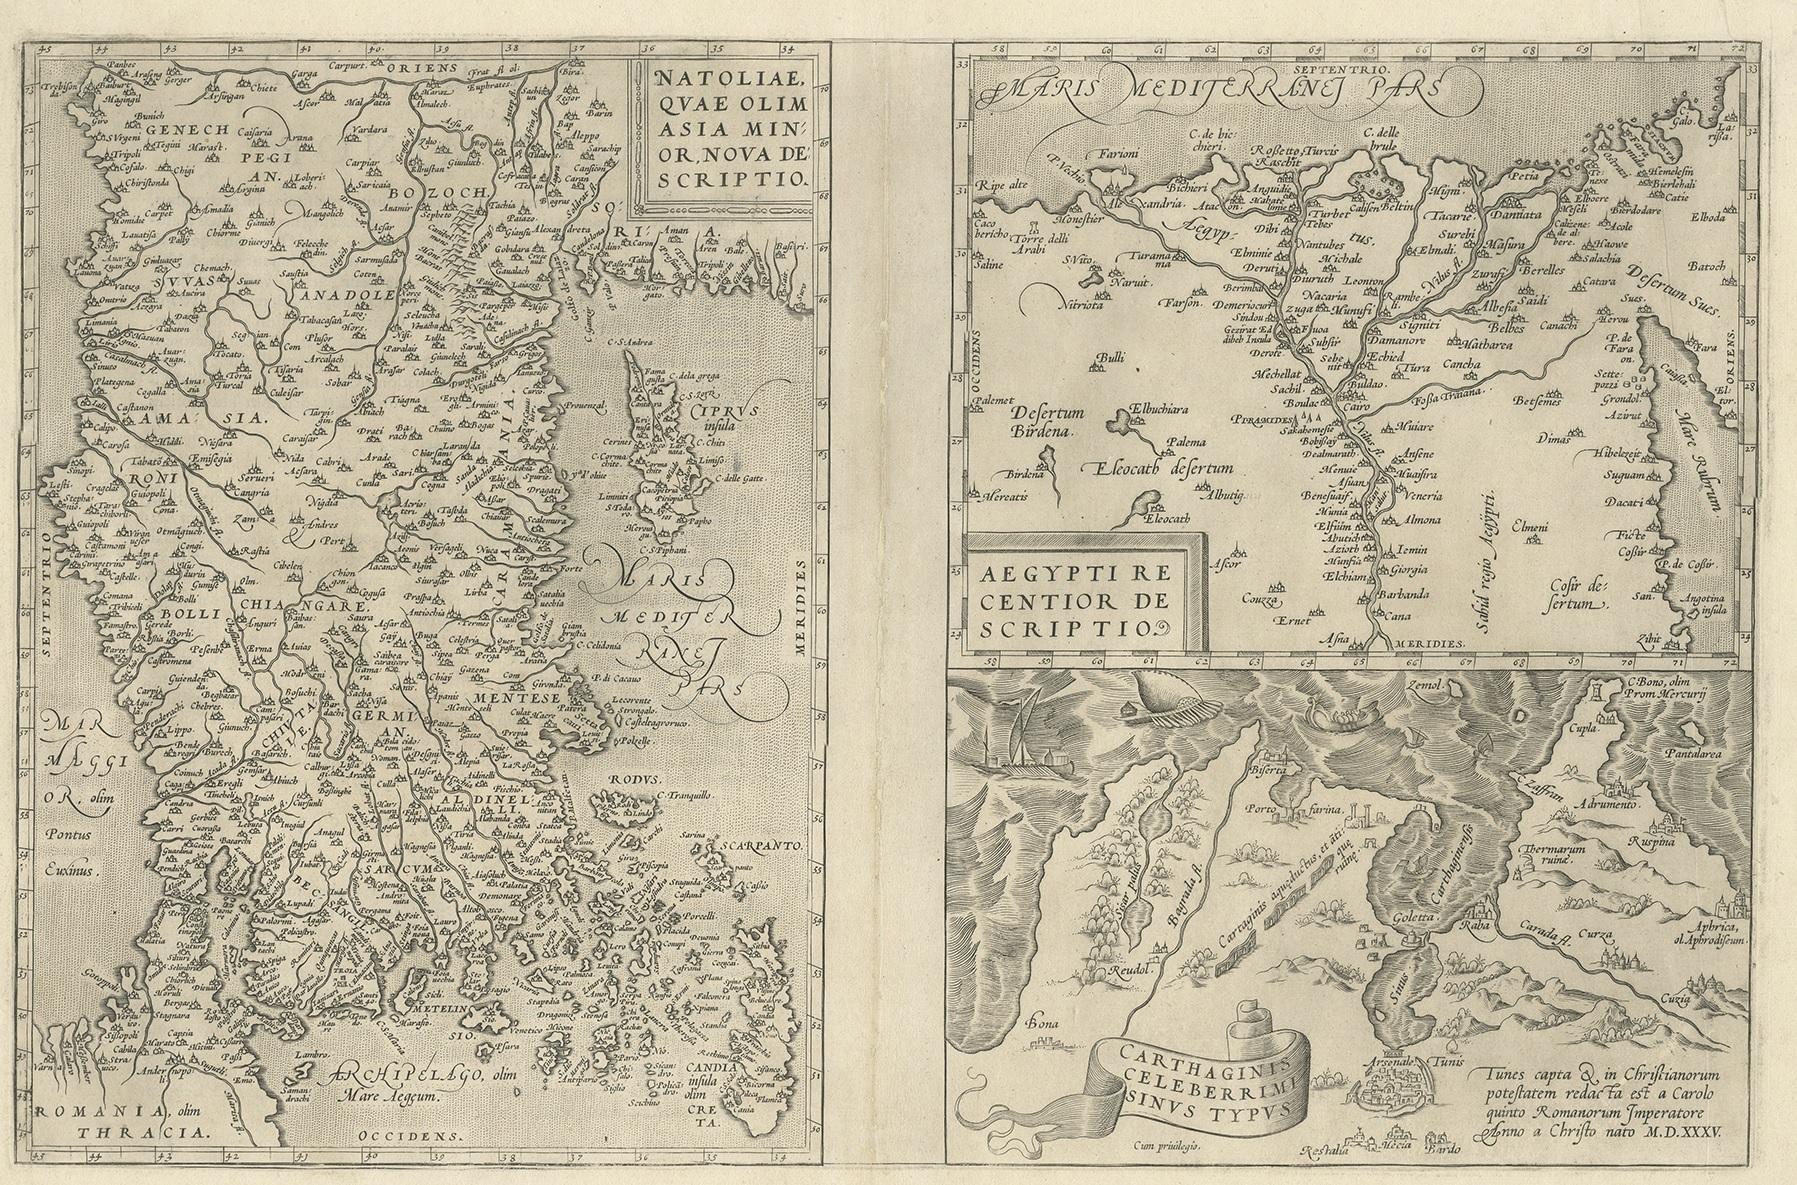 Drei antike Karten auf einem Blatt mit dem Titel 'Natoliae quae olim Asia Minor [mit] Aegypti recentior descriptio [mit] Carthaginis Celeberrimisinus Typus'. Die erste Karte umfasst Kleinasien, Zypern und das östliche Mittelmeer. Die zweite Karte